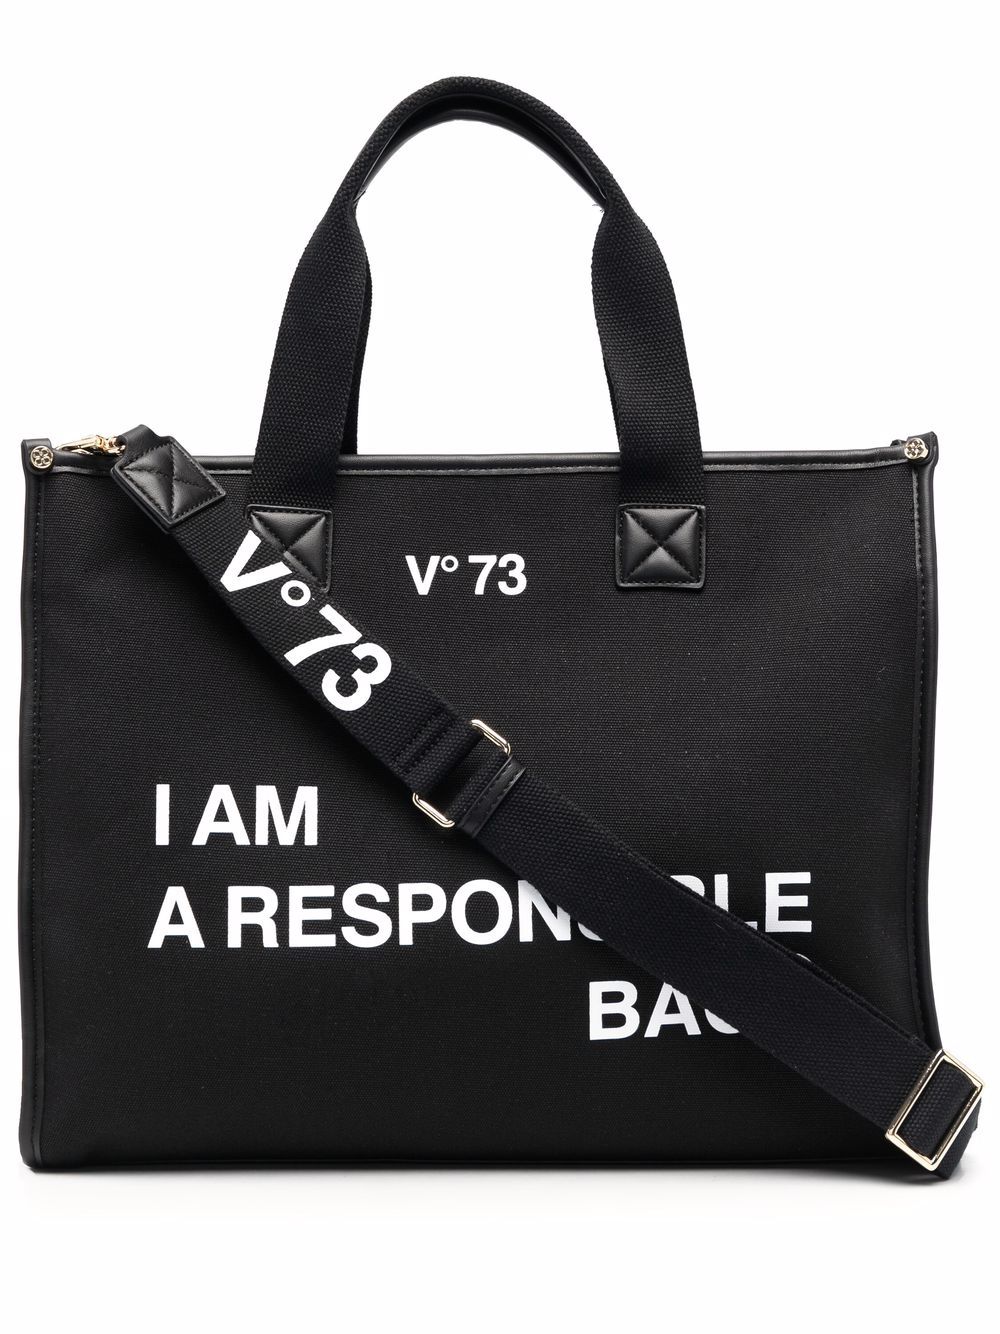 v°73 sac cabas responsability - noir